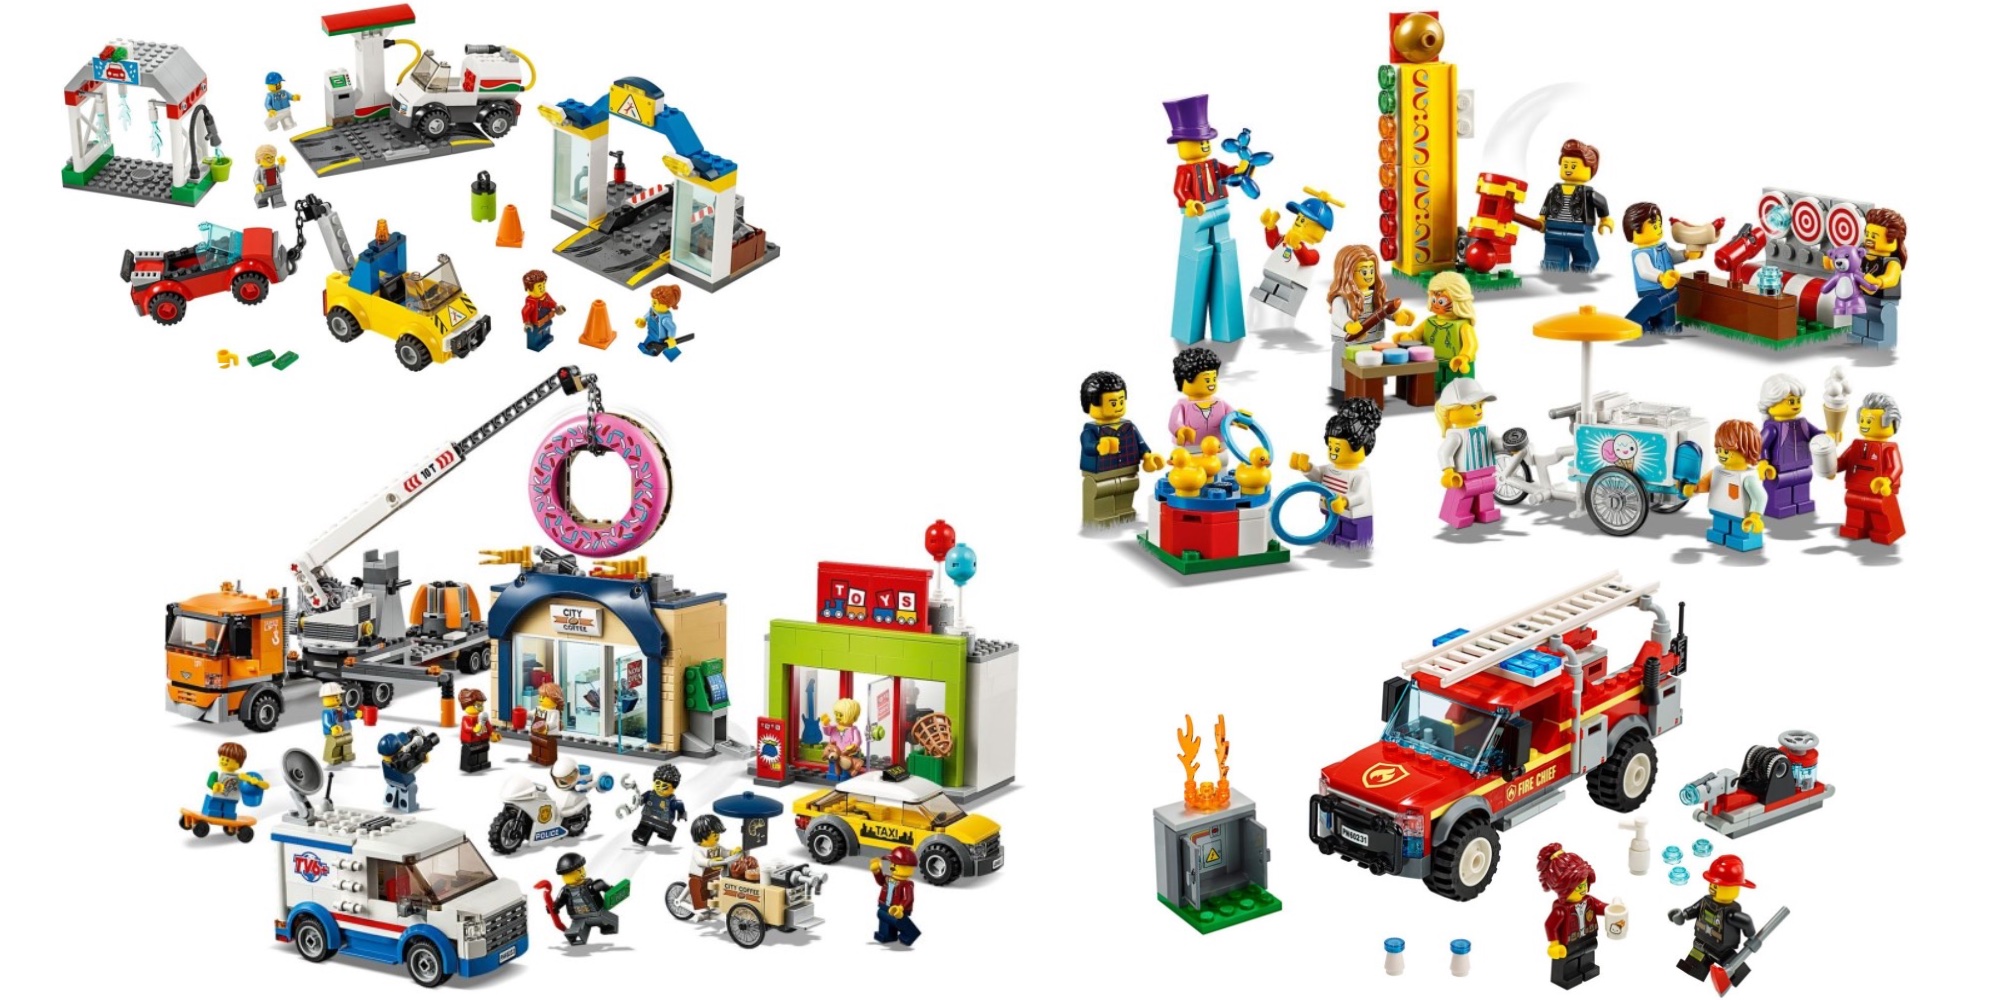 LEGO Summer City kits